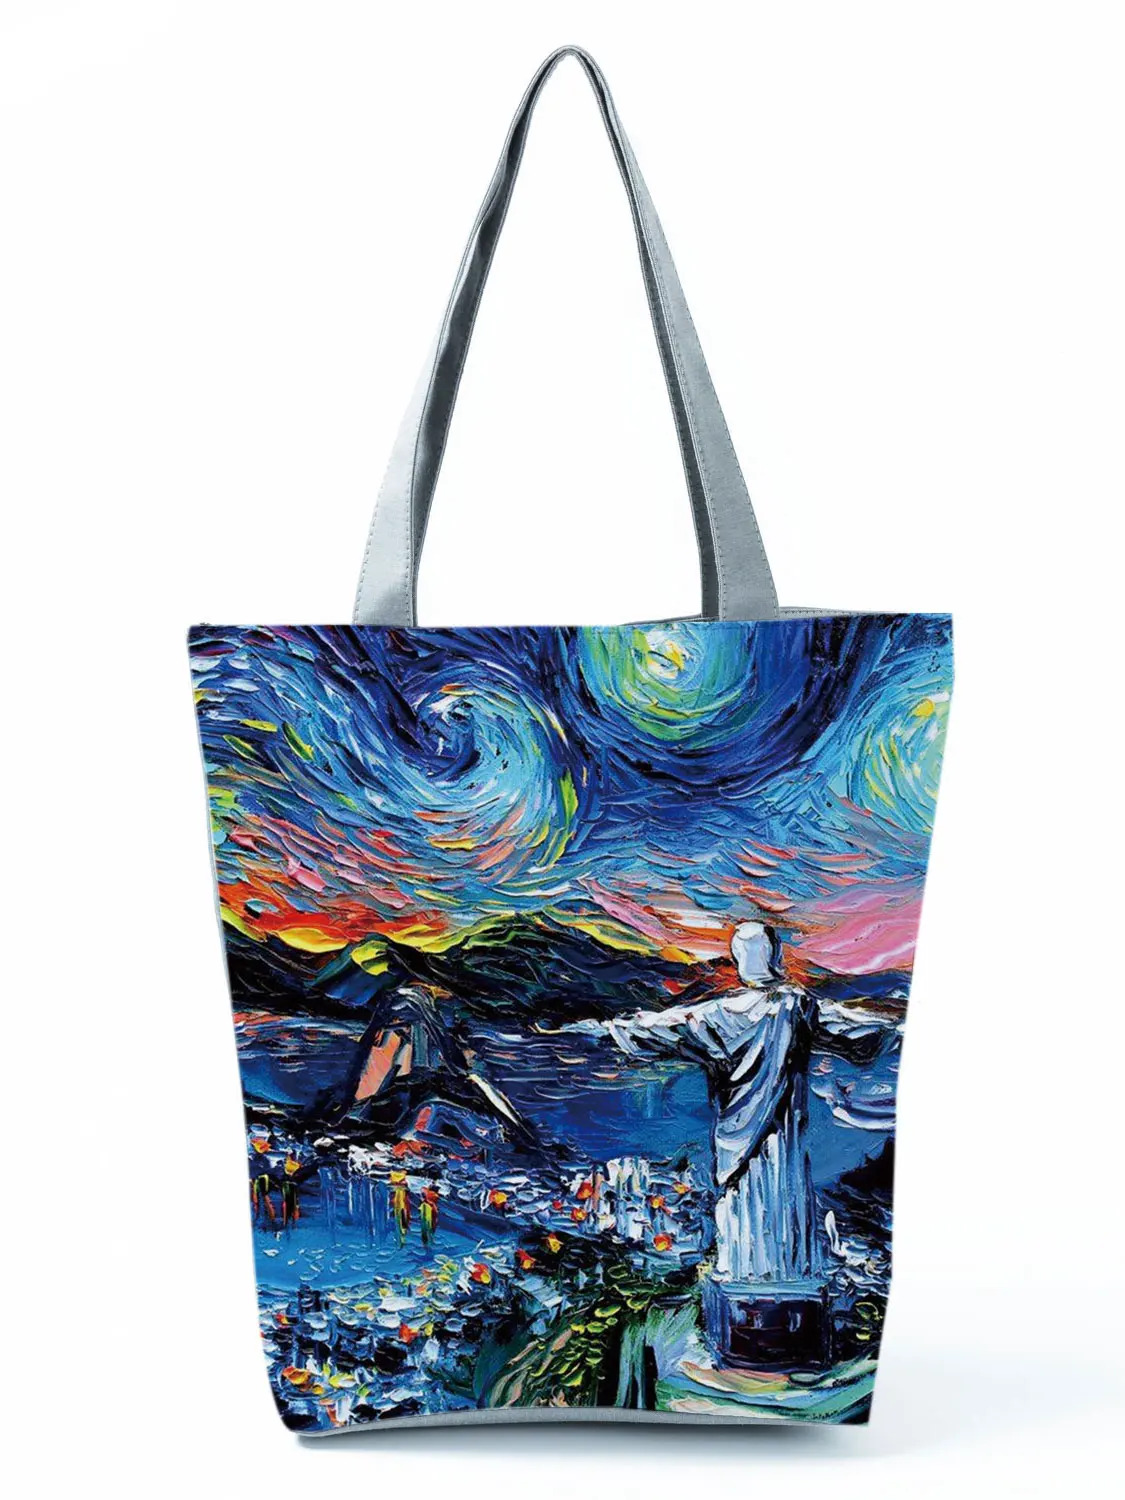 New Van Gogh Oil Painti Tote Bag Retro Art Fashion Travel Bag Women Leisure Eco Shopping High Quality Foldable Handbags Portable 